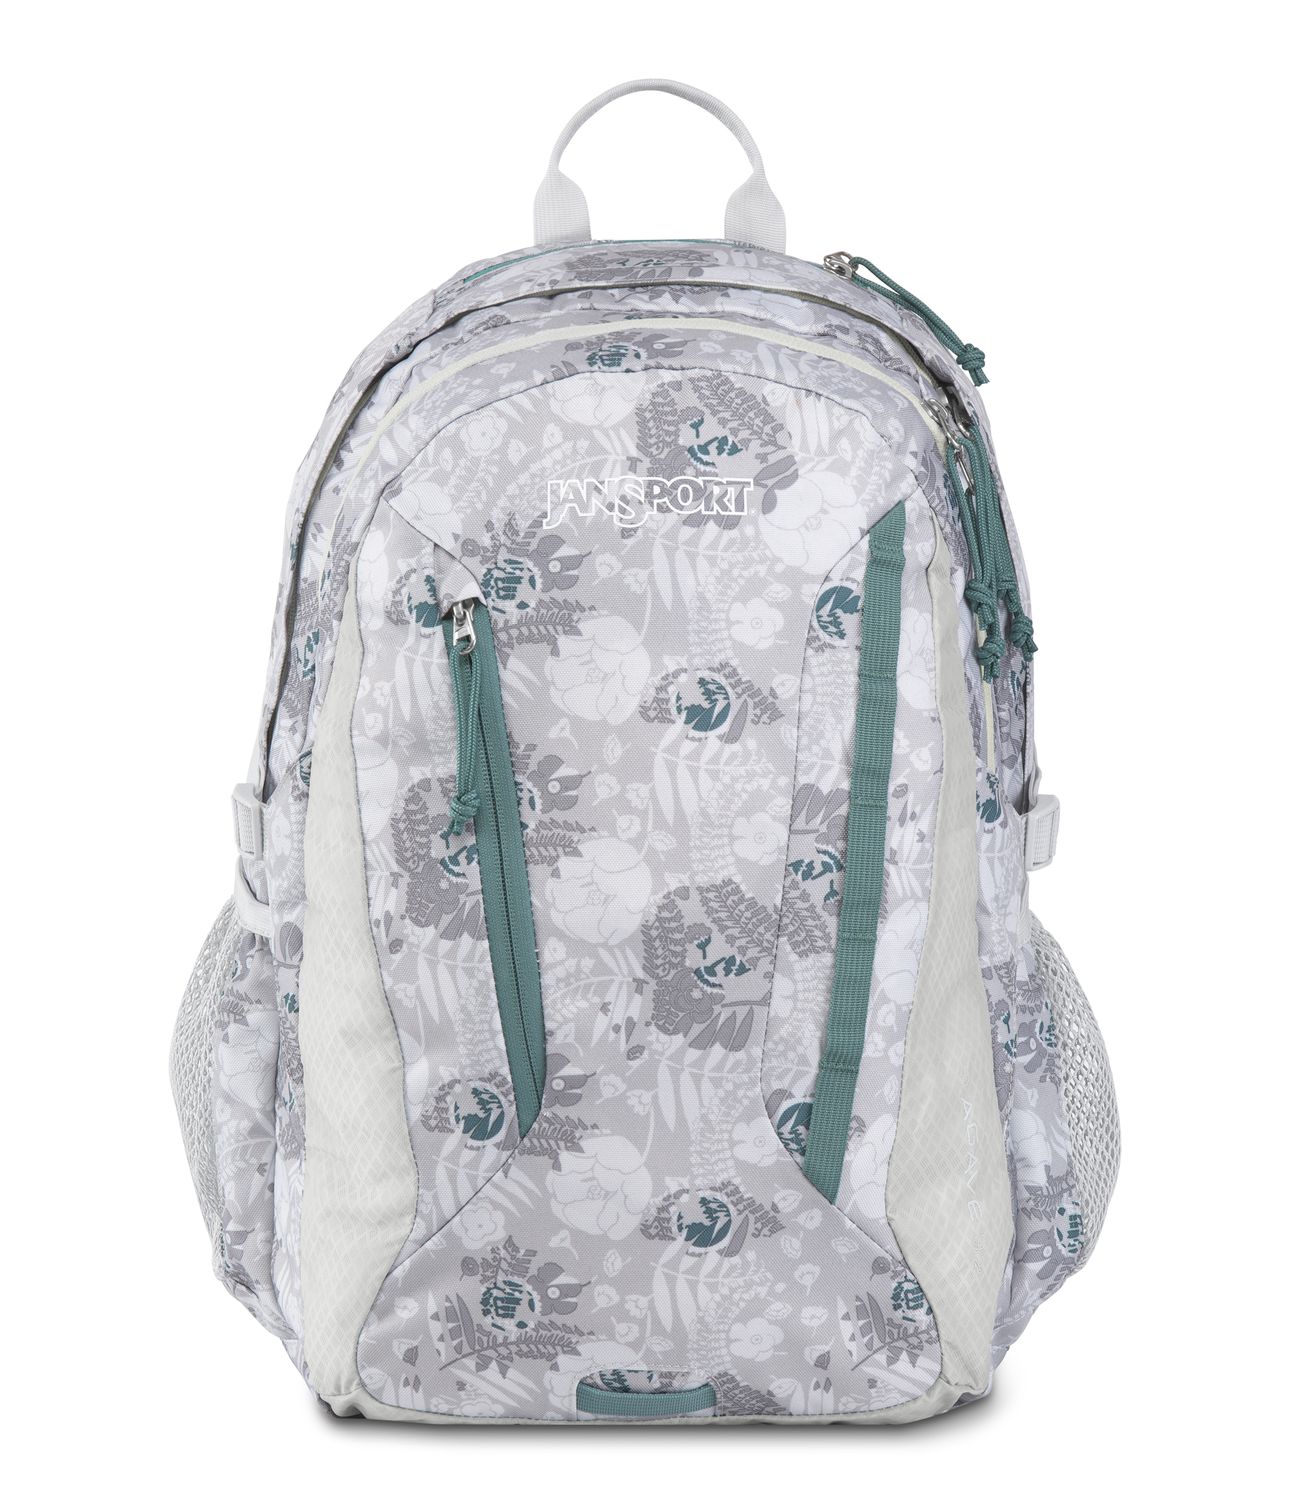 jansport 15 inch laptop backpack